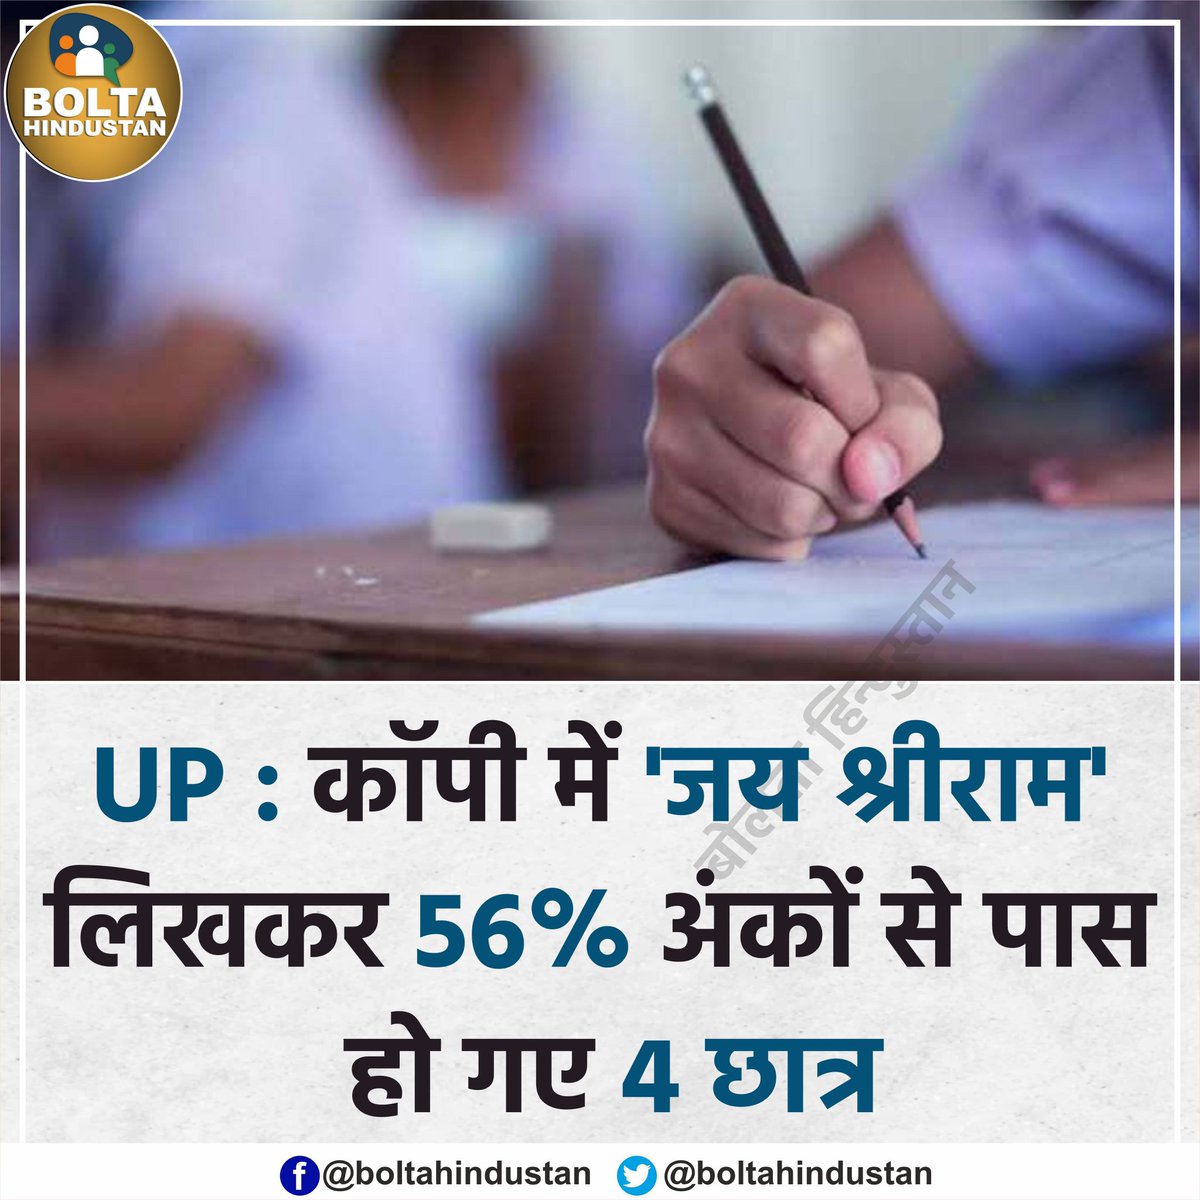 #UP: कॉपी में 'जय श्रीराम' लिख आए 4 छात्र, प्रोफेसर ने 56% अंकों से कर दिया पास
#uttarpradeshnews